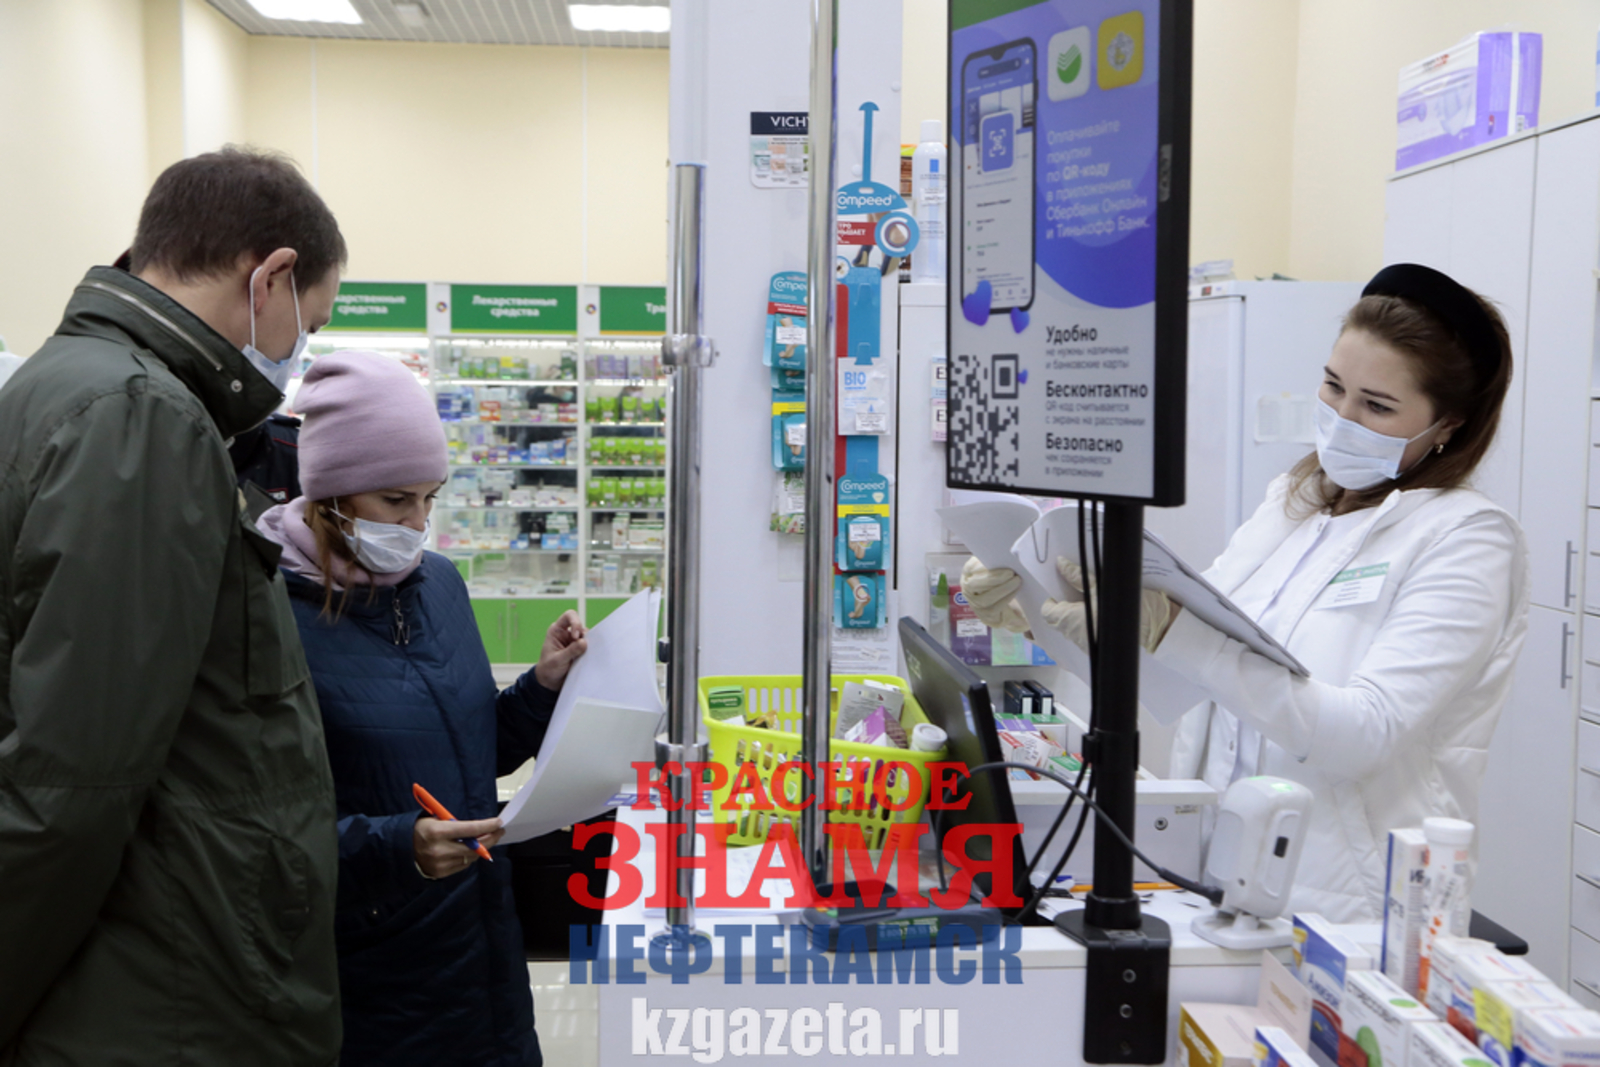 Фото: Руслан Никонов, «КЗ».  В аптечном пункте ТЦ все рекомендации соблюдены. Не зря говорят: всё как в аптеке.